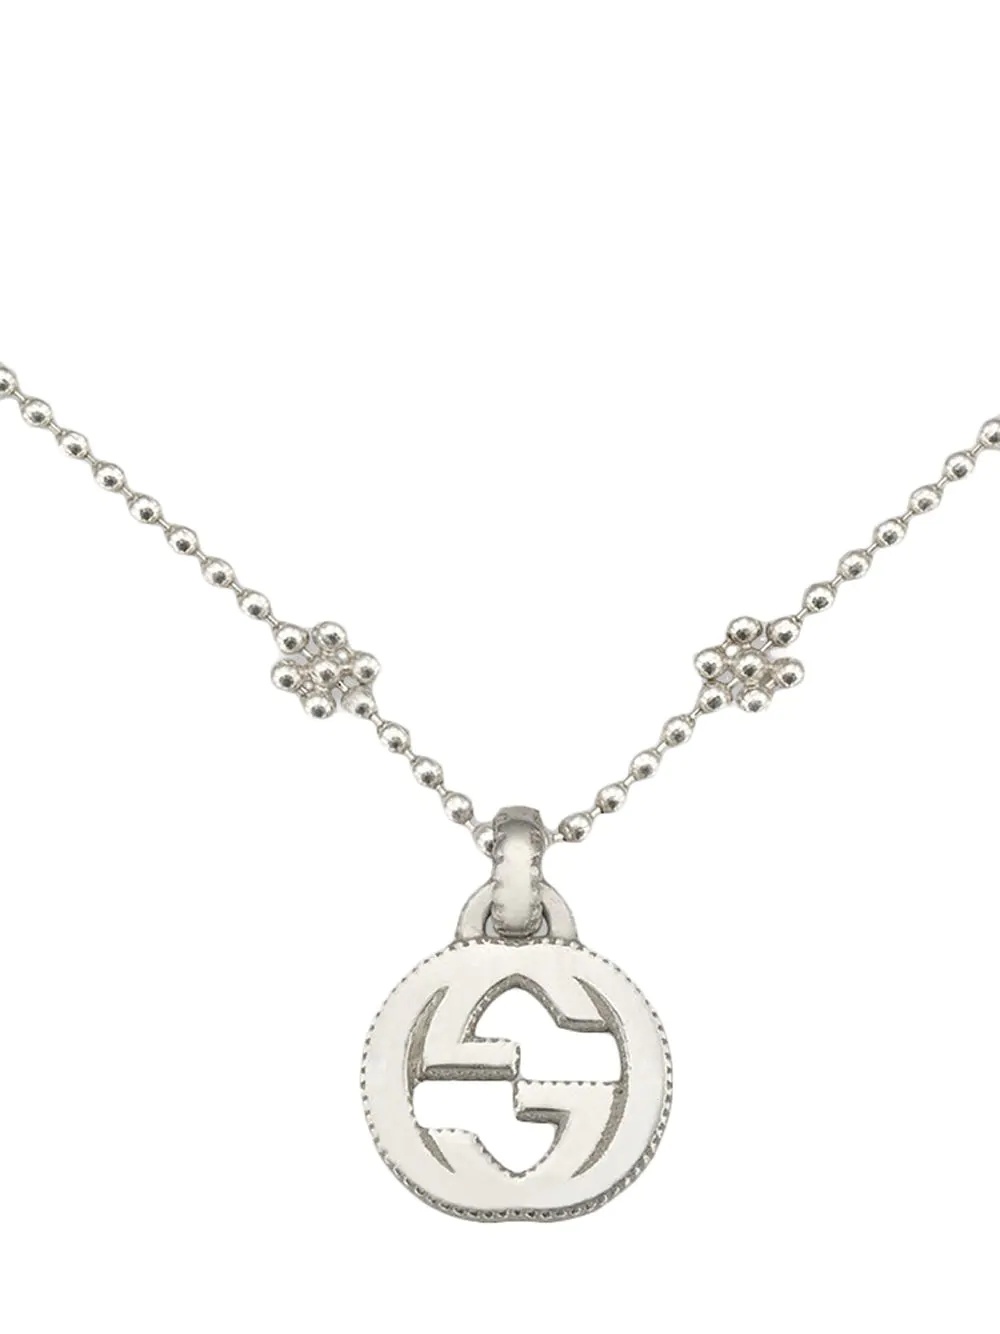 Interlocking G necklace in silver - 2